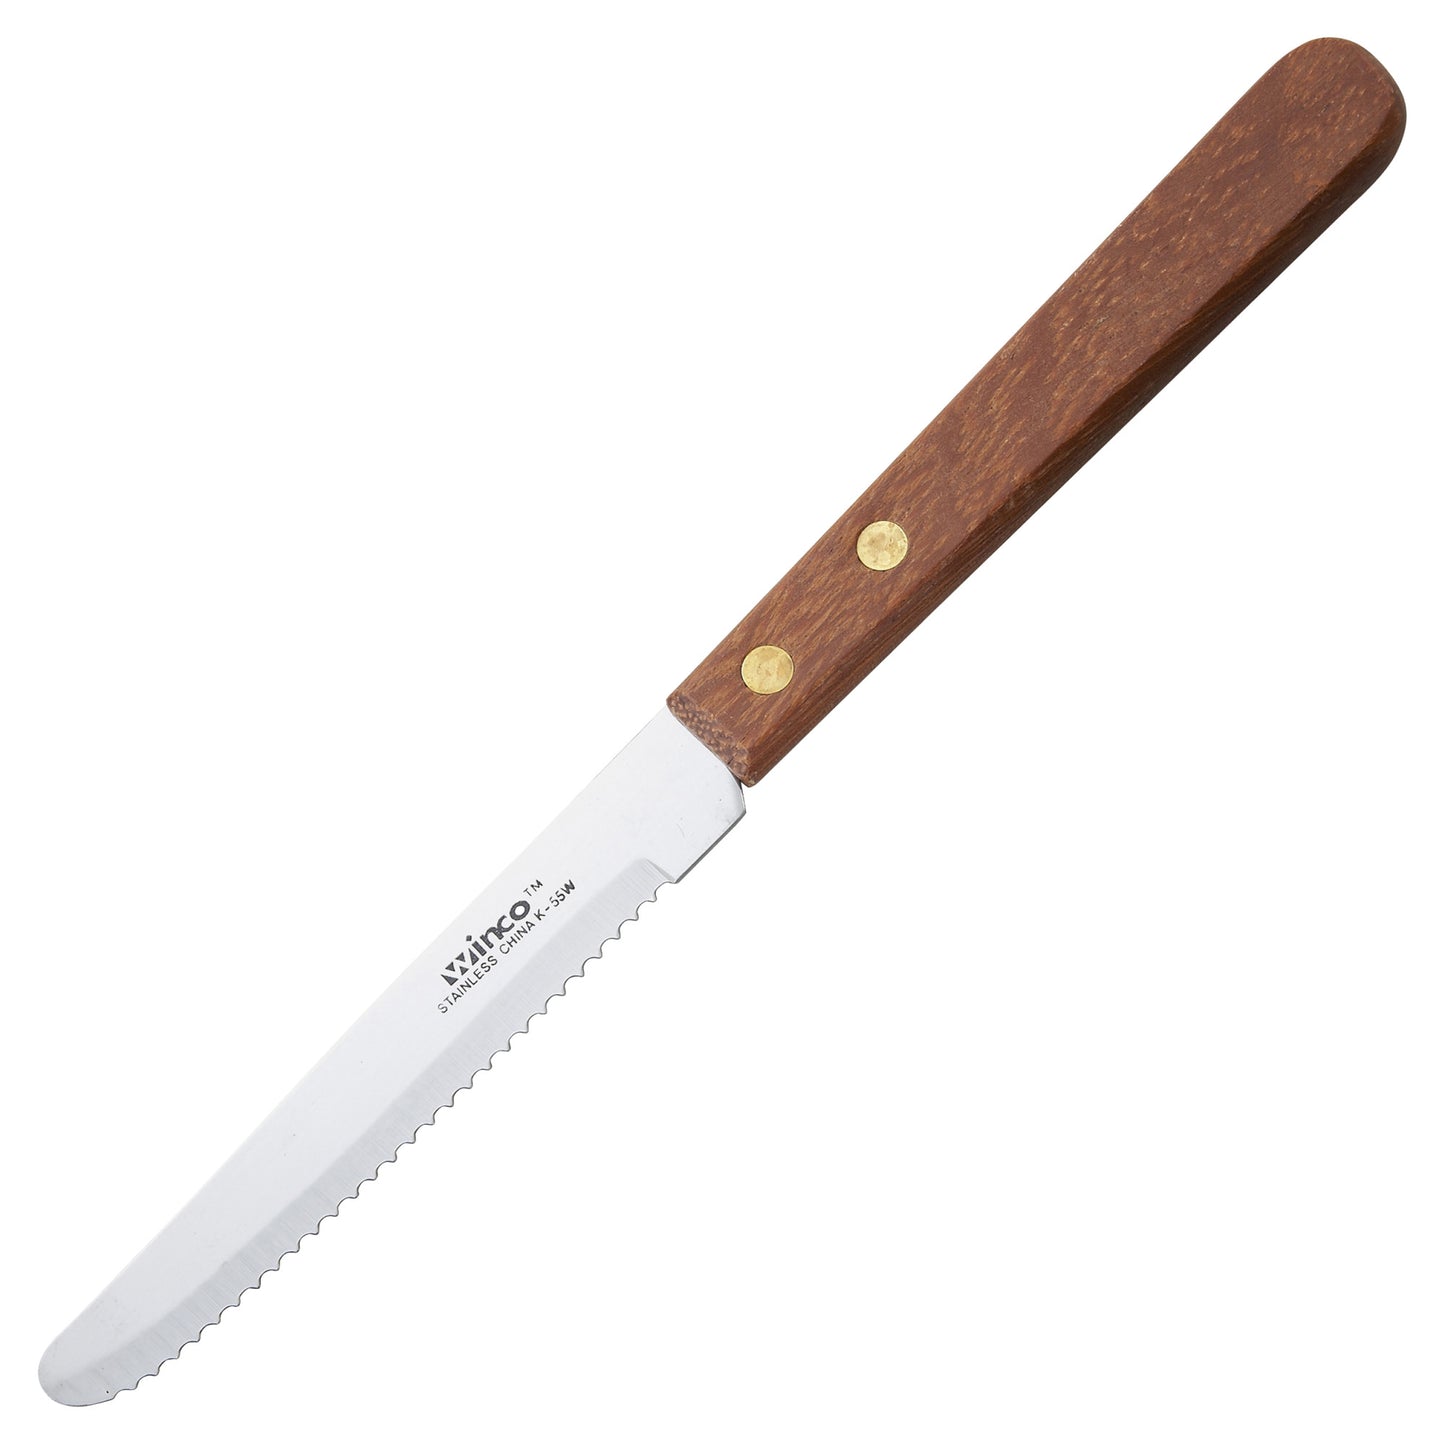 K-55W - Steak Knives, 4-1/2" Blade, Wooden Handle, Round Tip